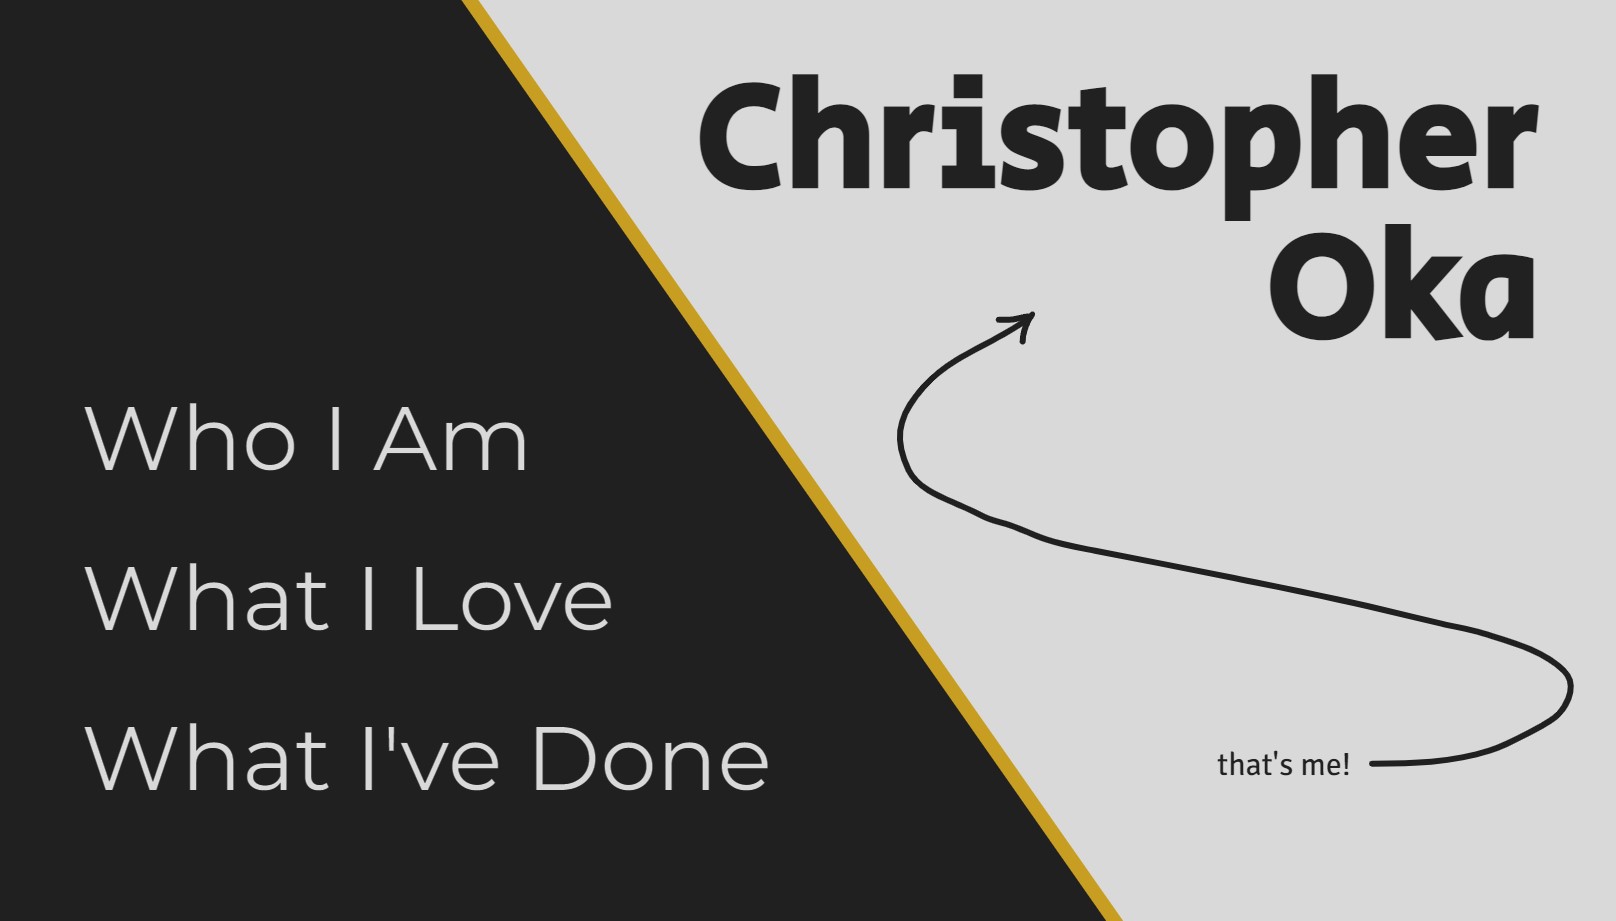 The homepage of christopheroka.com